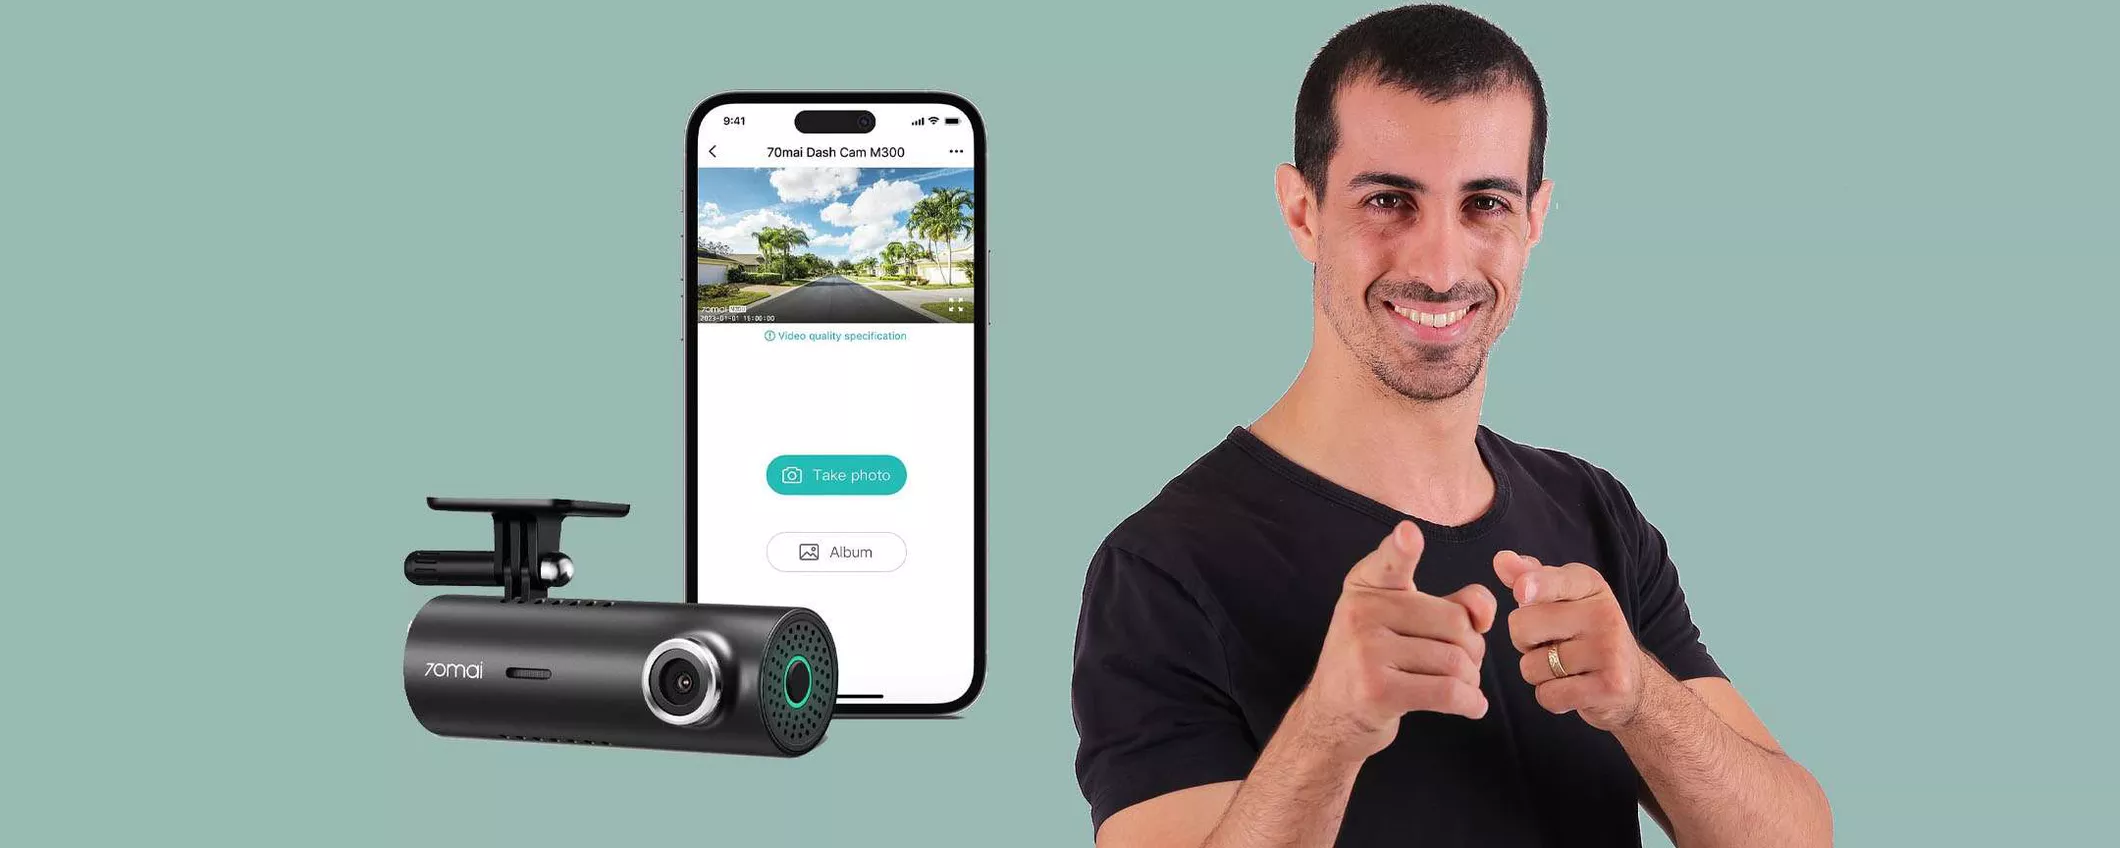 Dash Cam smart con Wi-Fi integrato: offerta TOP su Amazon